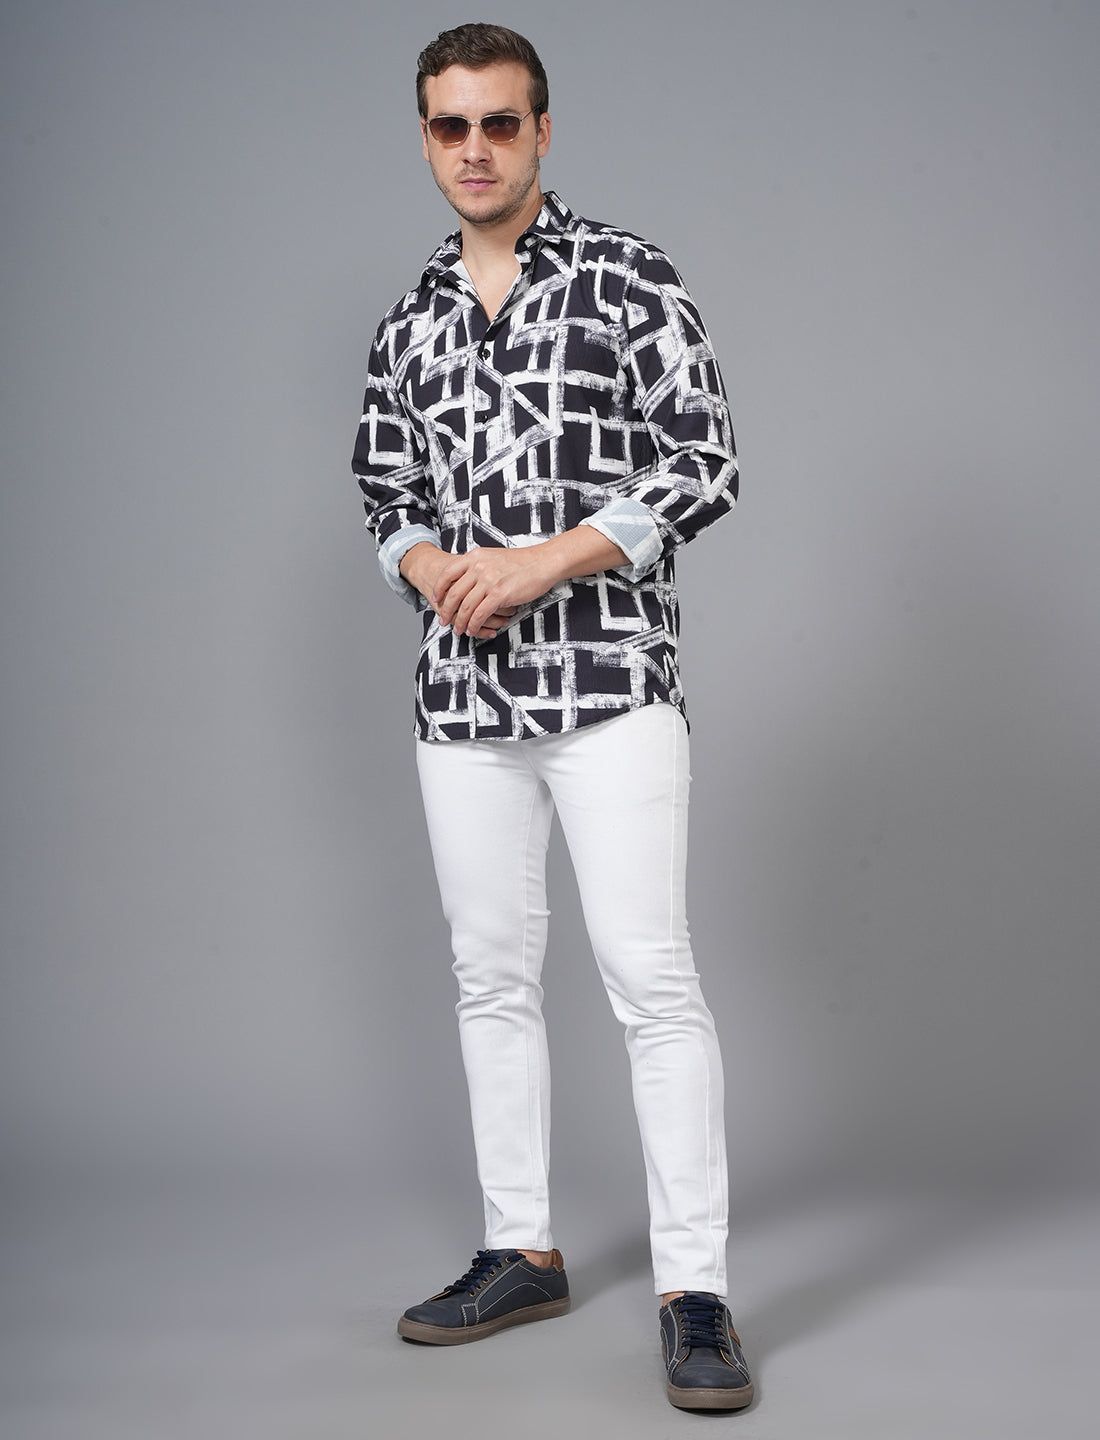 Black White Full Sleeve Printed Shirt Online Shopping